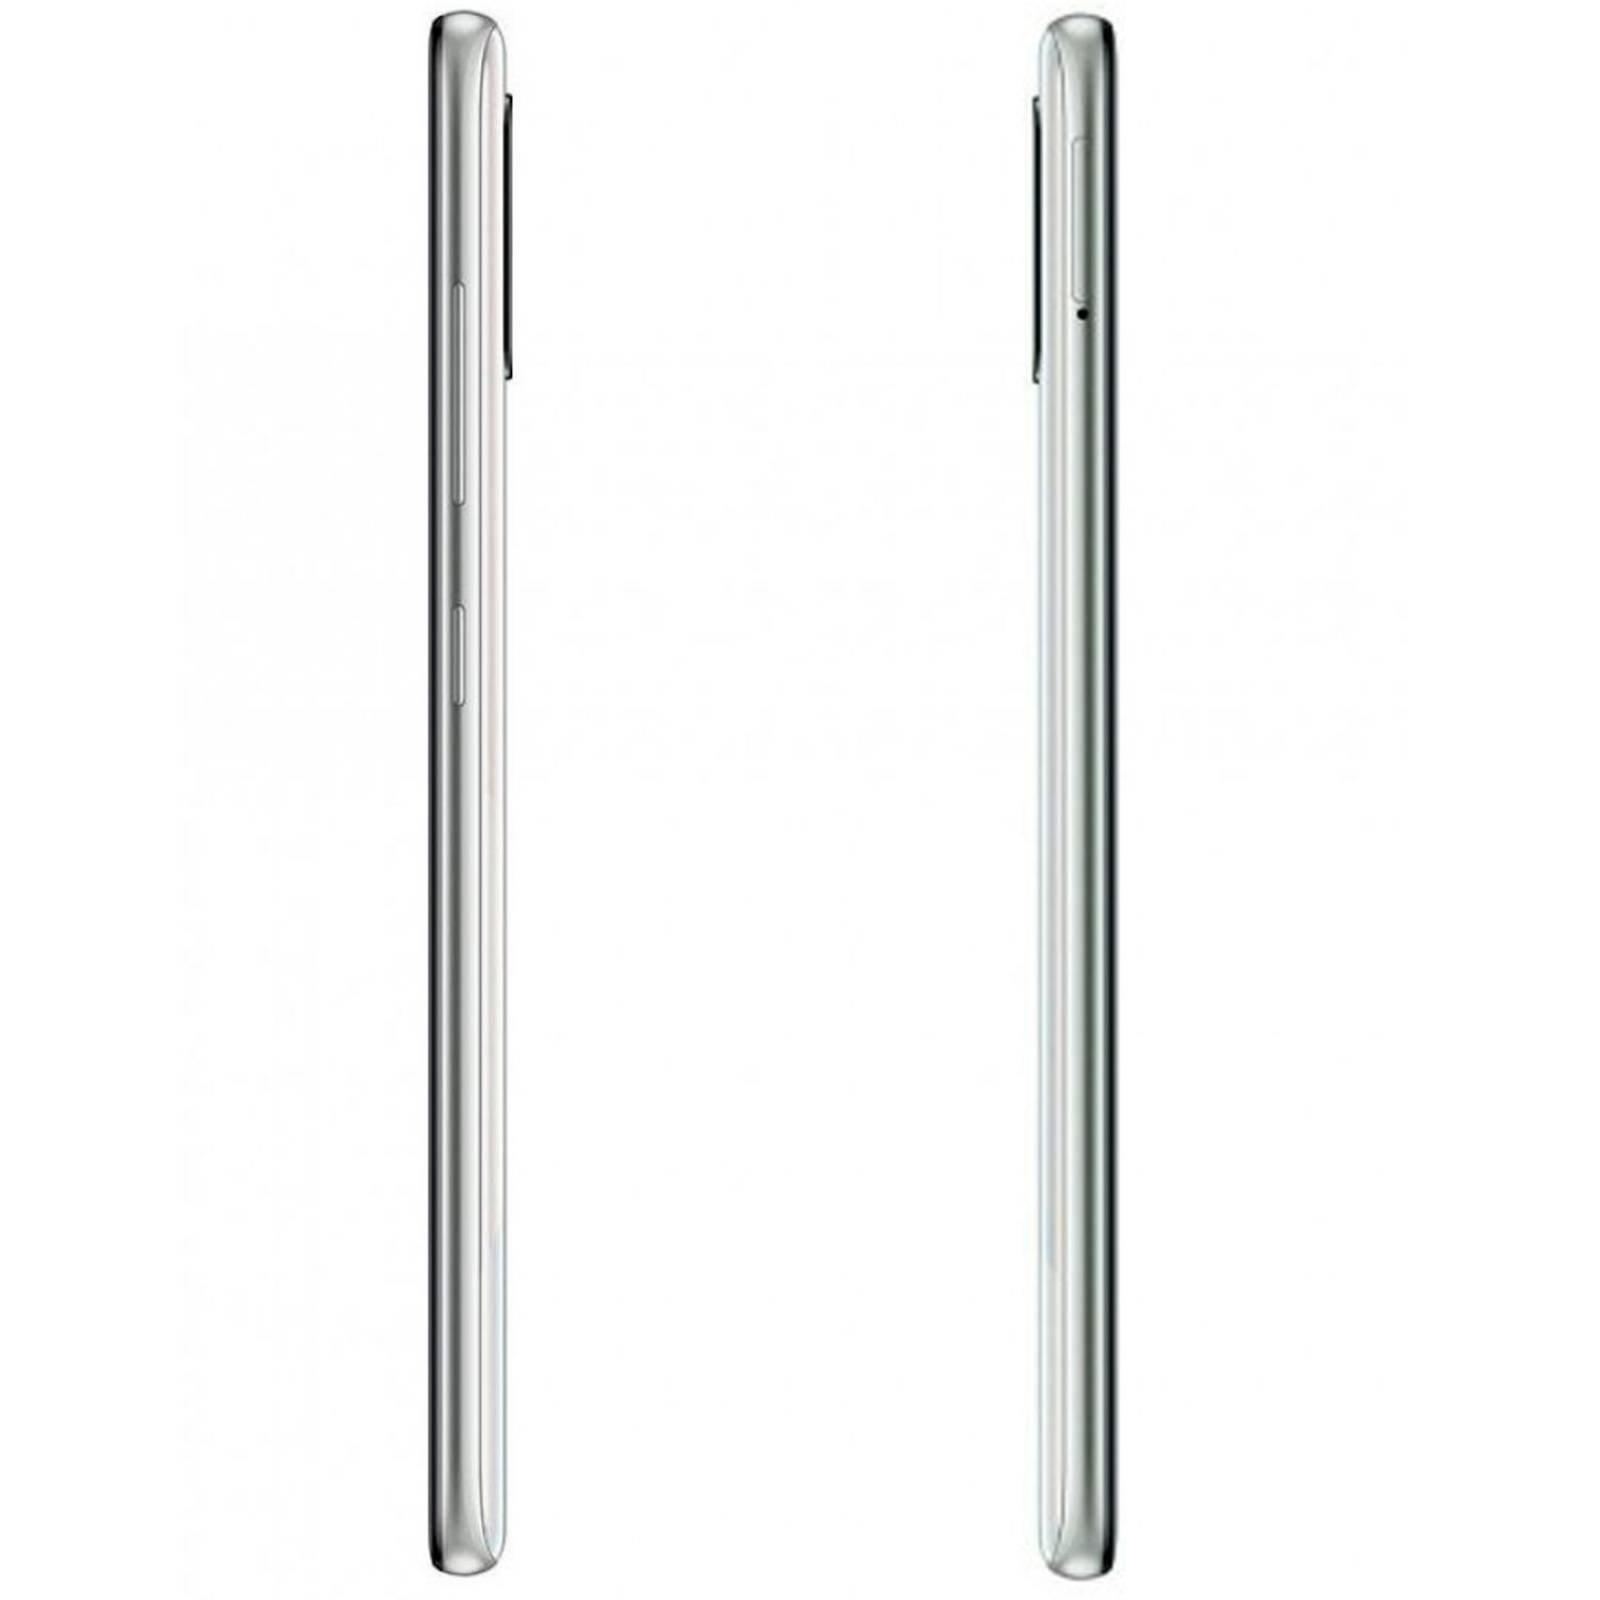 Celular SAMSUNG Galaxy A51 4GB 128GB Octa Core Dual Sim Blanco 